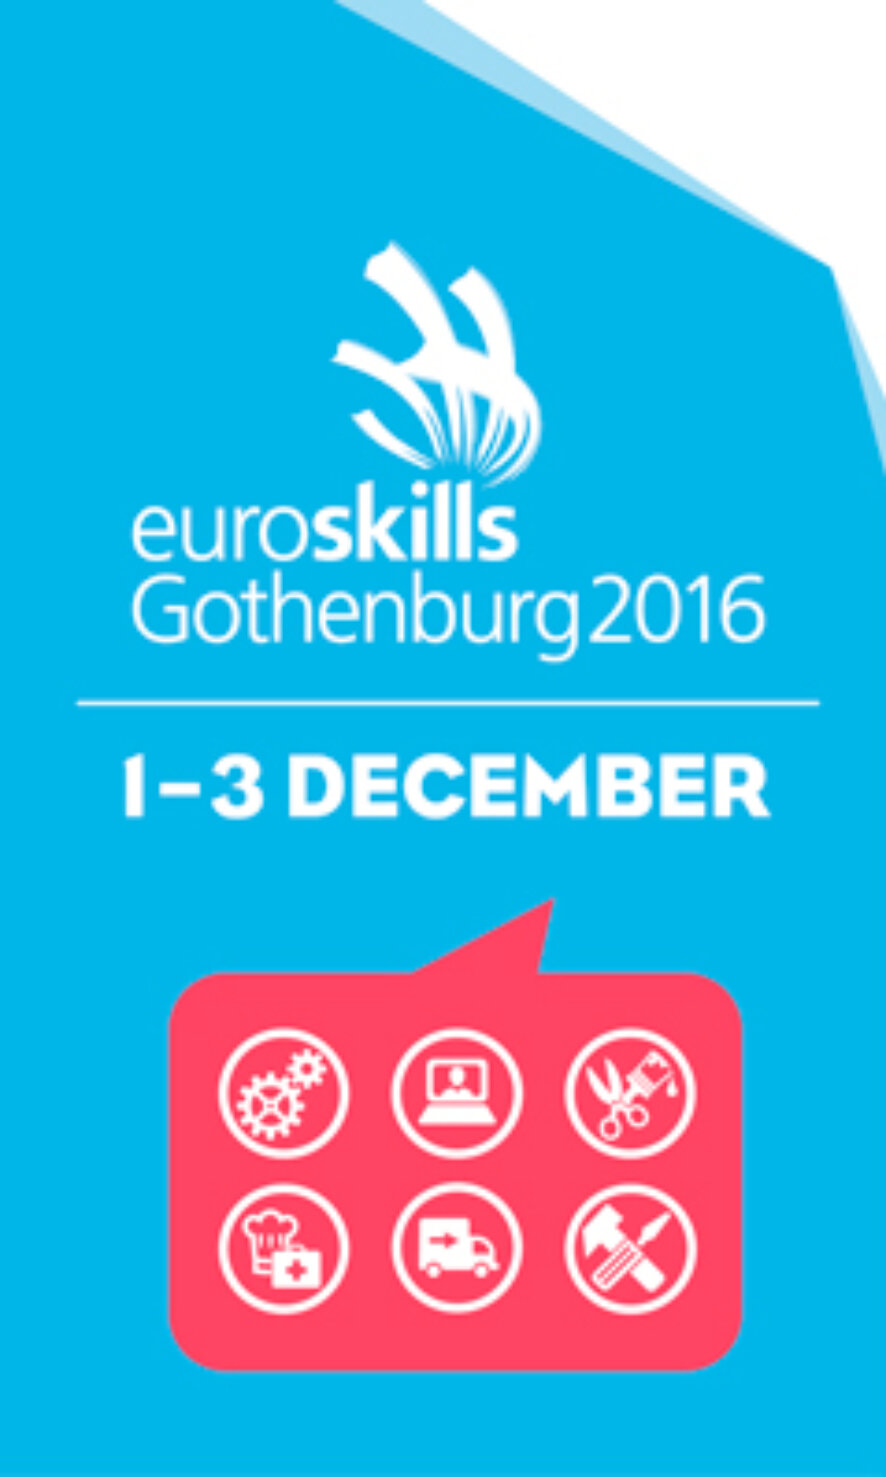 До начала соревнований по профессиональному мастерству среди молодежи EuroSkills 2016 осталось два дня